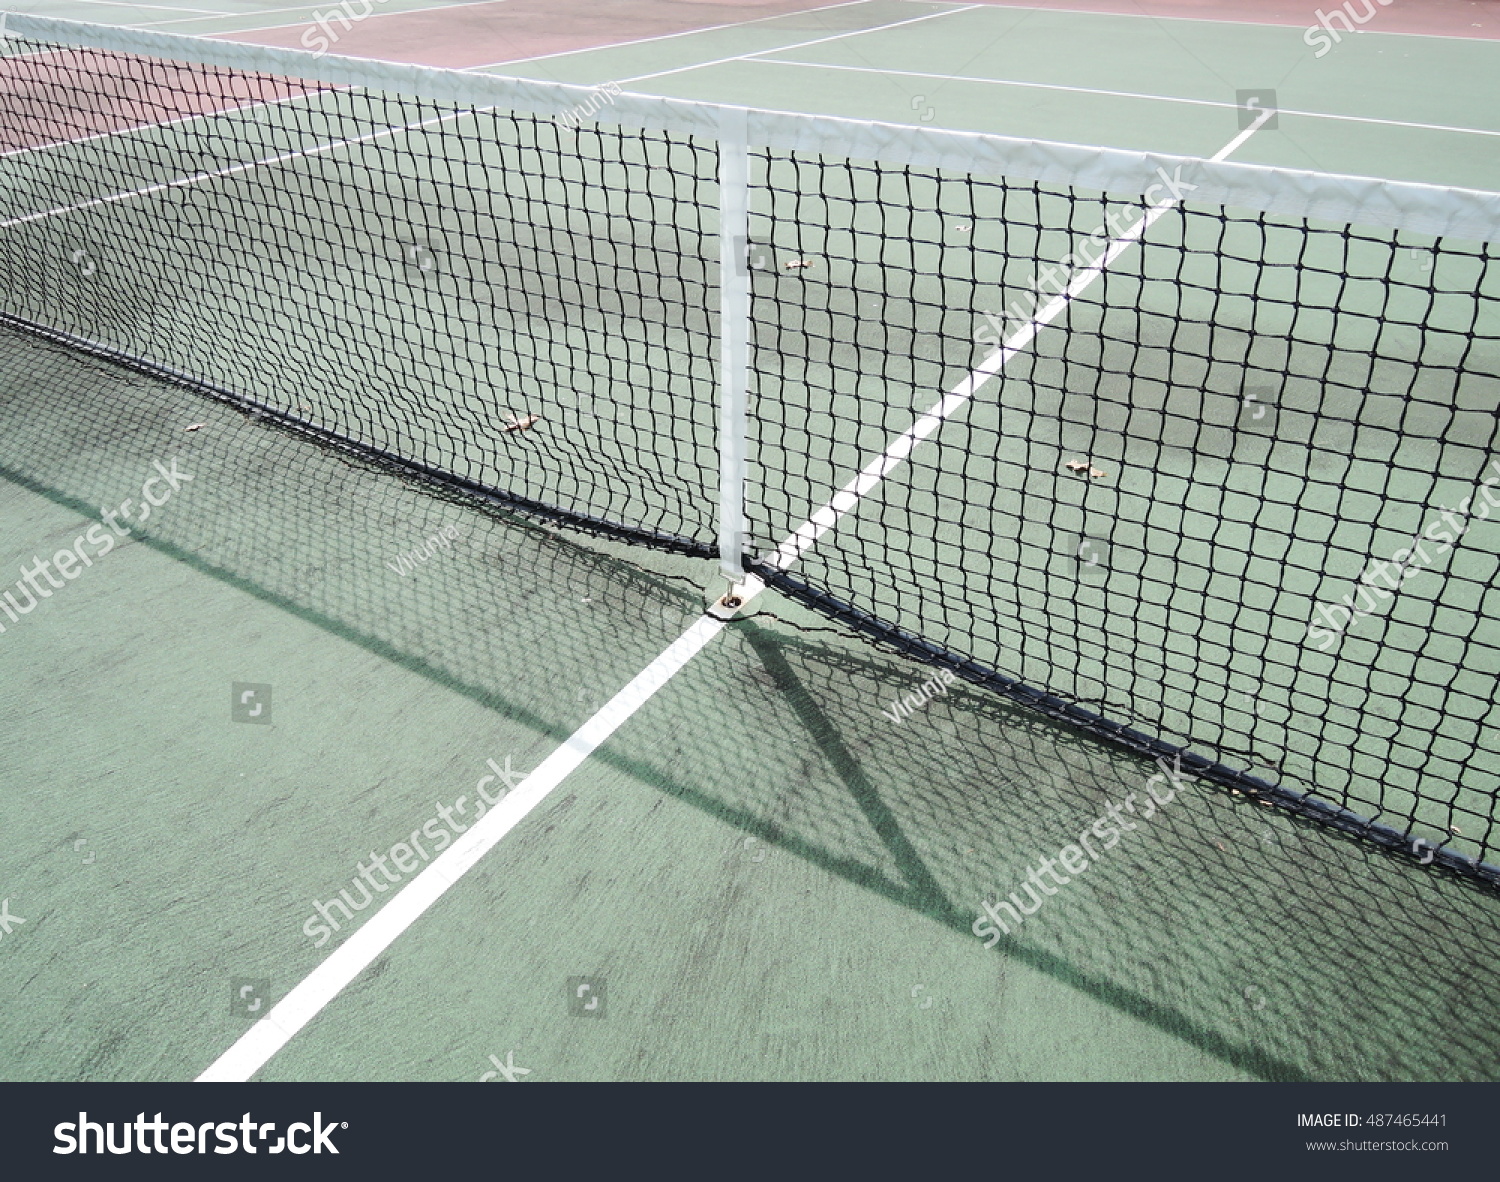 Tennis court #487465441